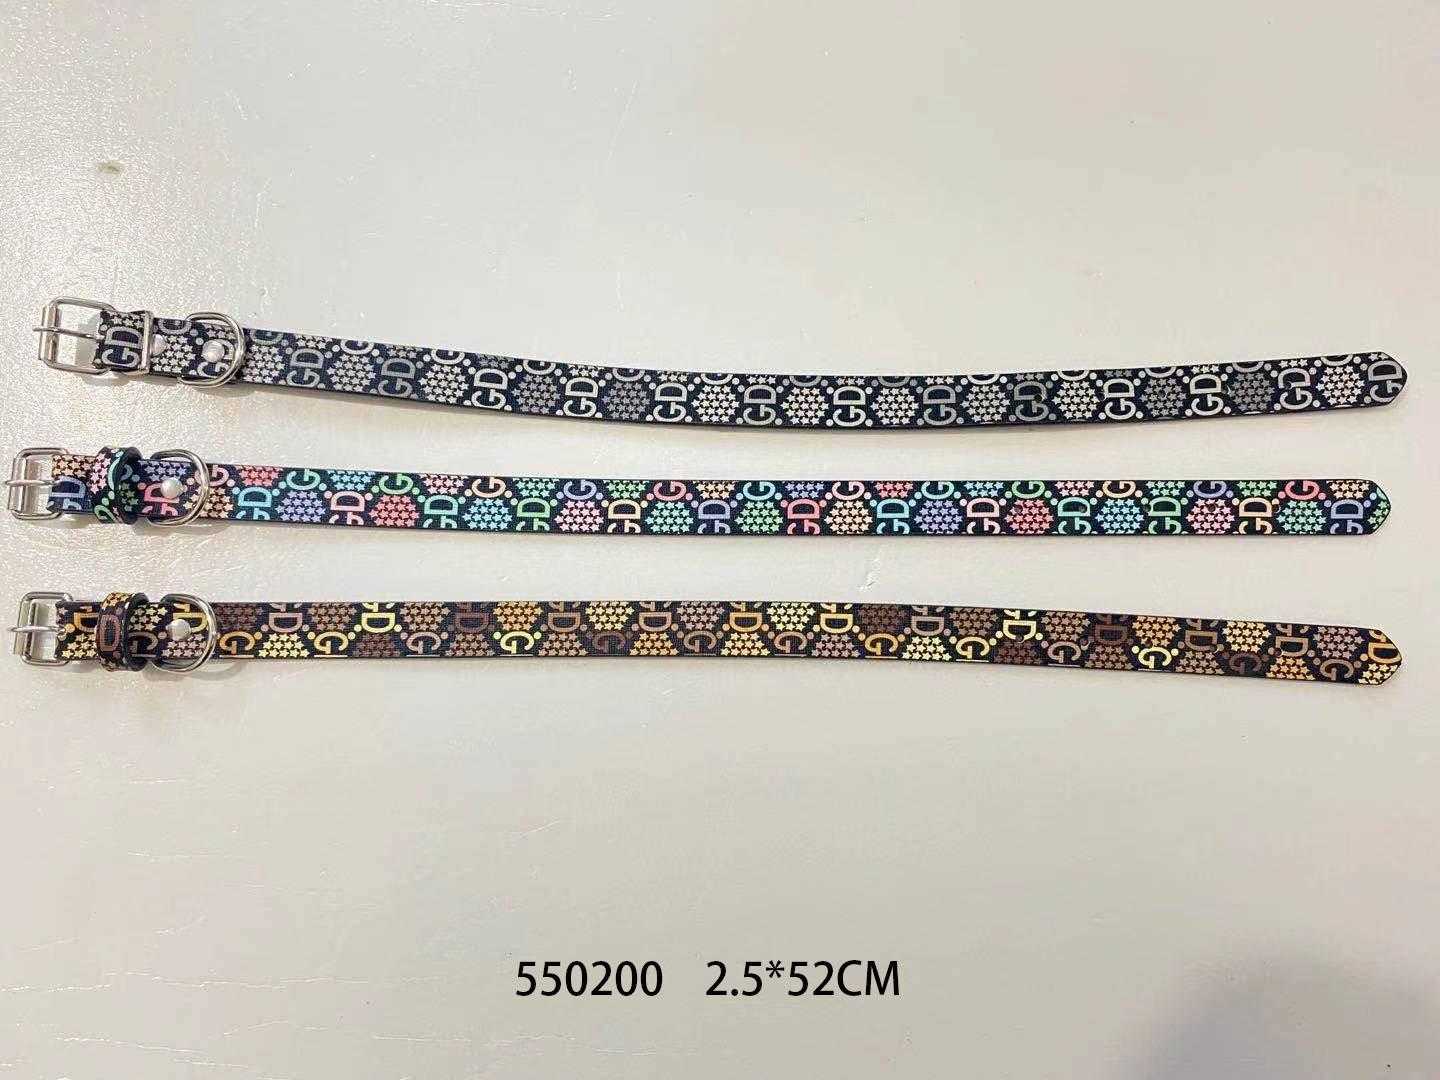 Collar - Dog collar - GD - 2.5x52cm - 550200